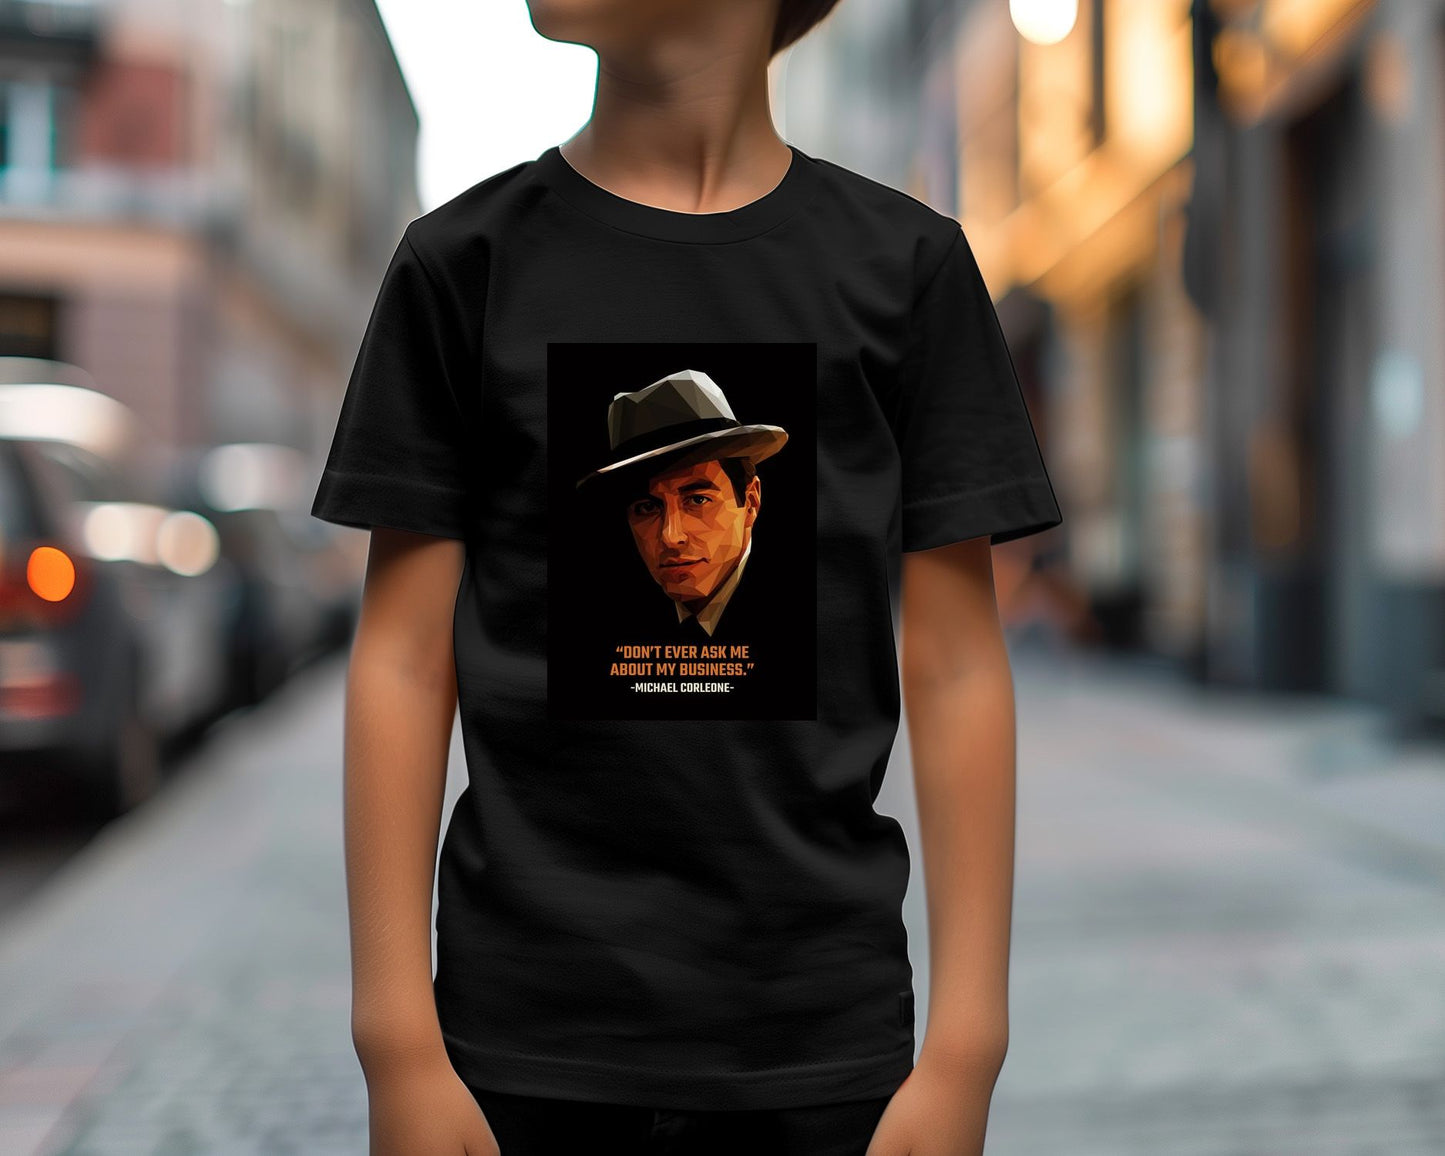 Michael Corleone - @YanzGallery